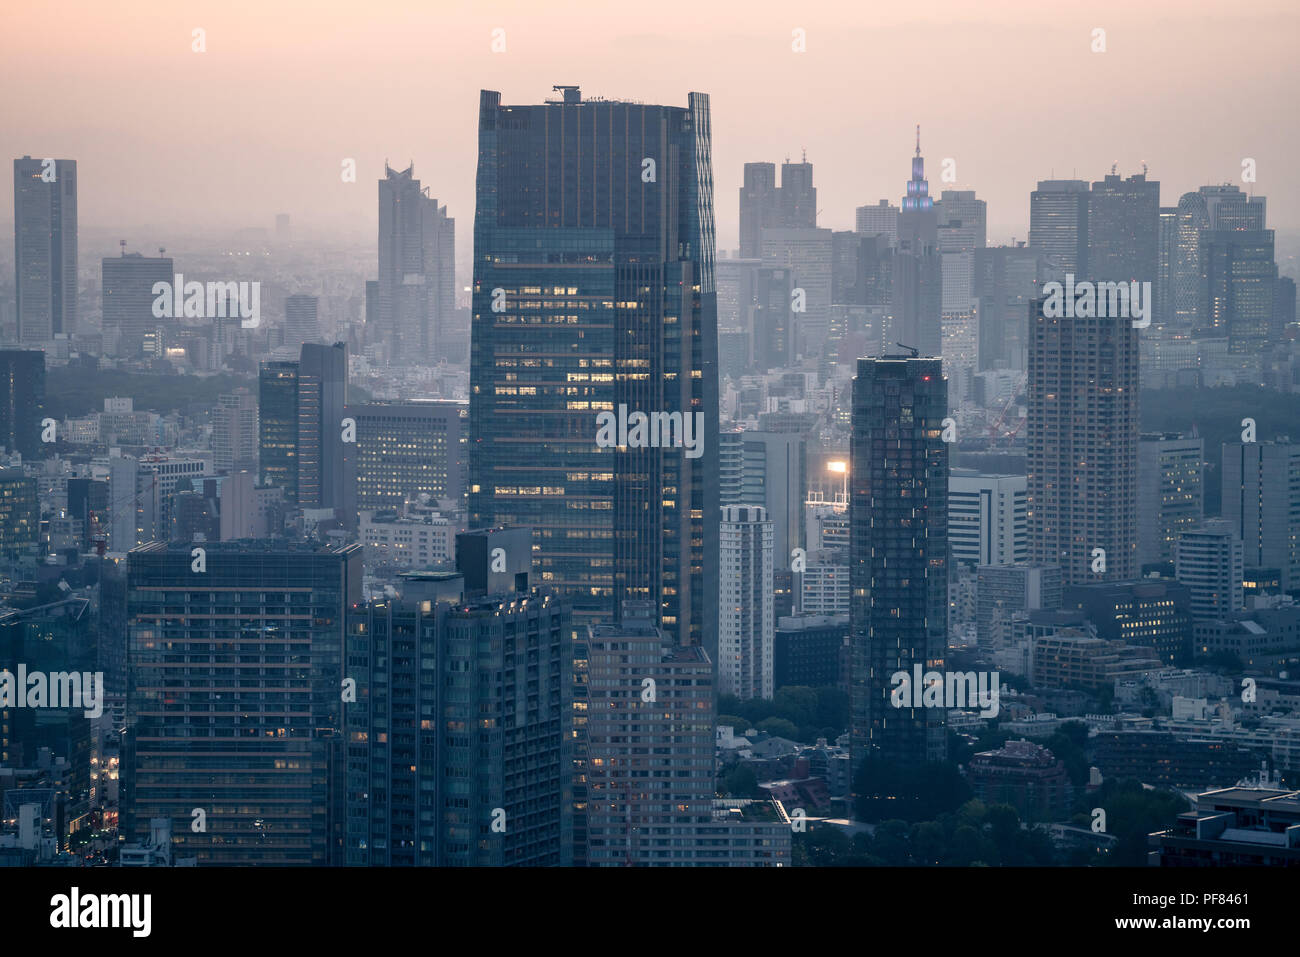 City skyline at hazy dusk Stock Photo